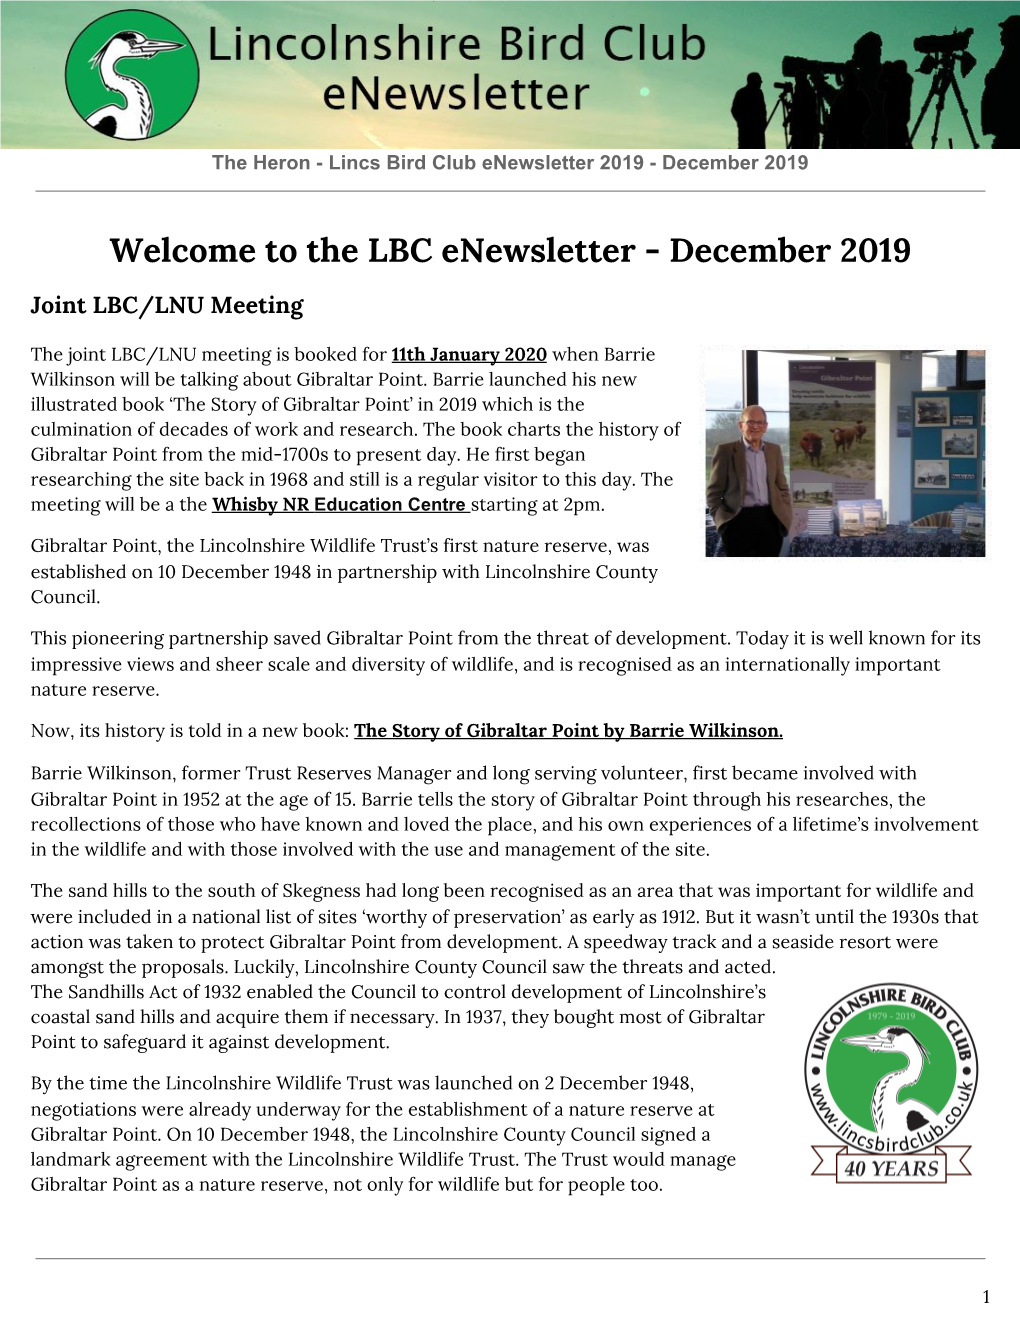 The LBC Enewsletter - December 2019